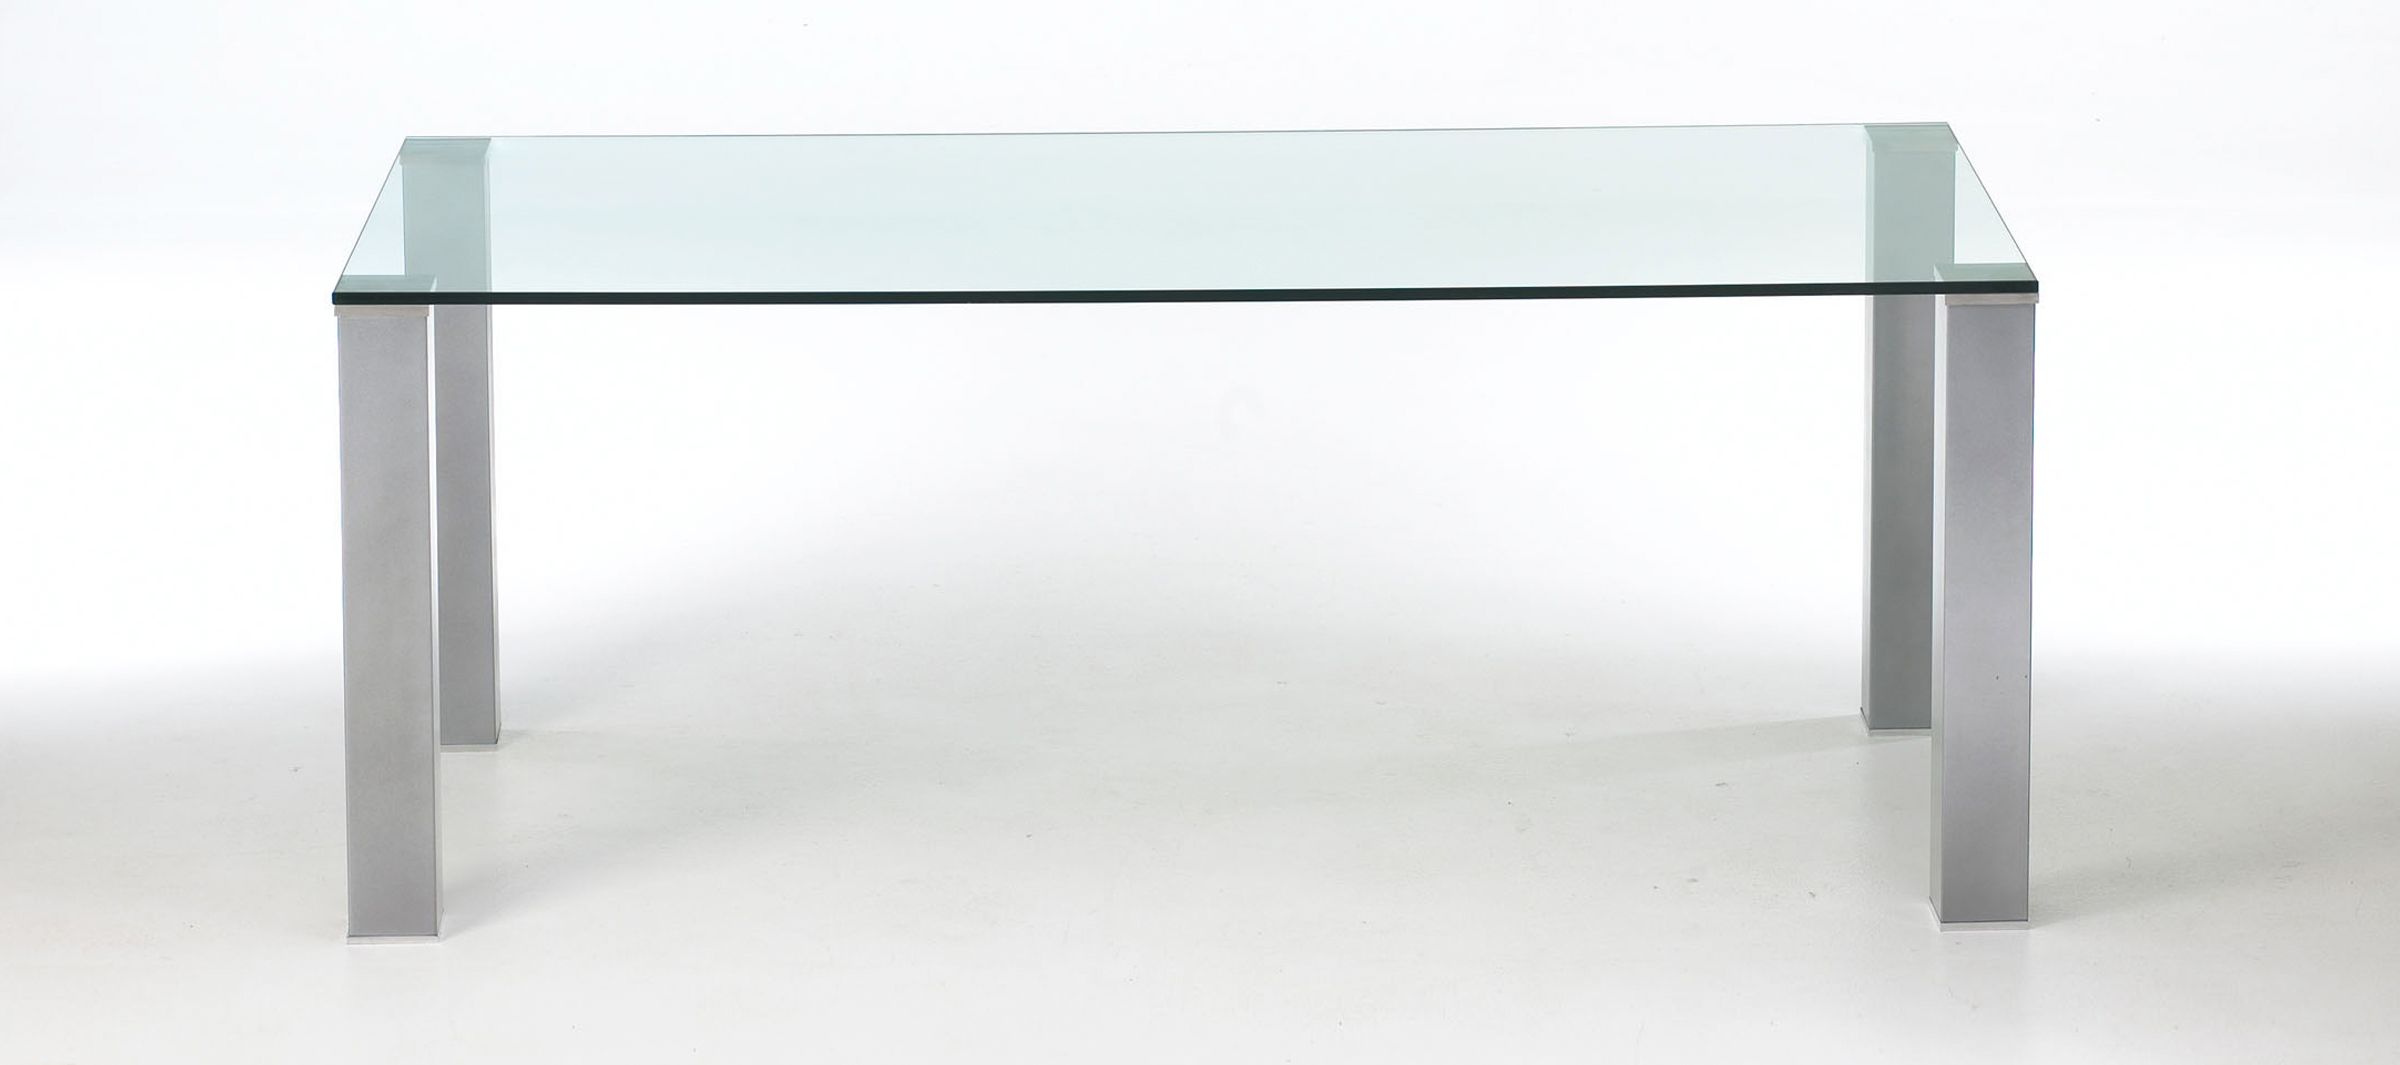 Een unieke designtafel ontwerpen bij Sumisura